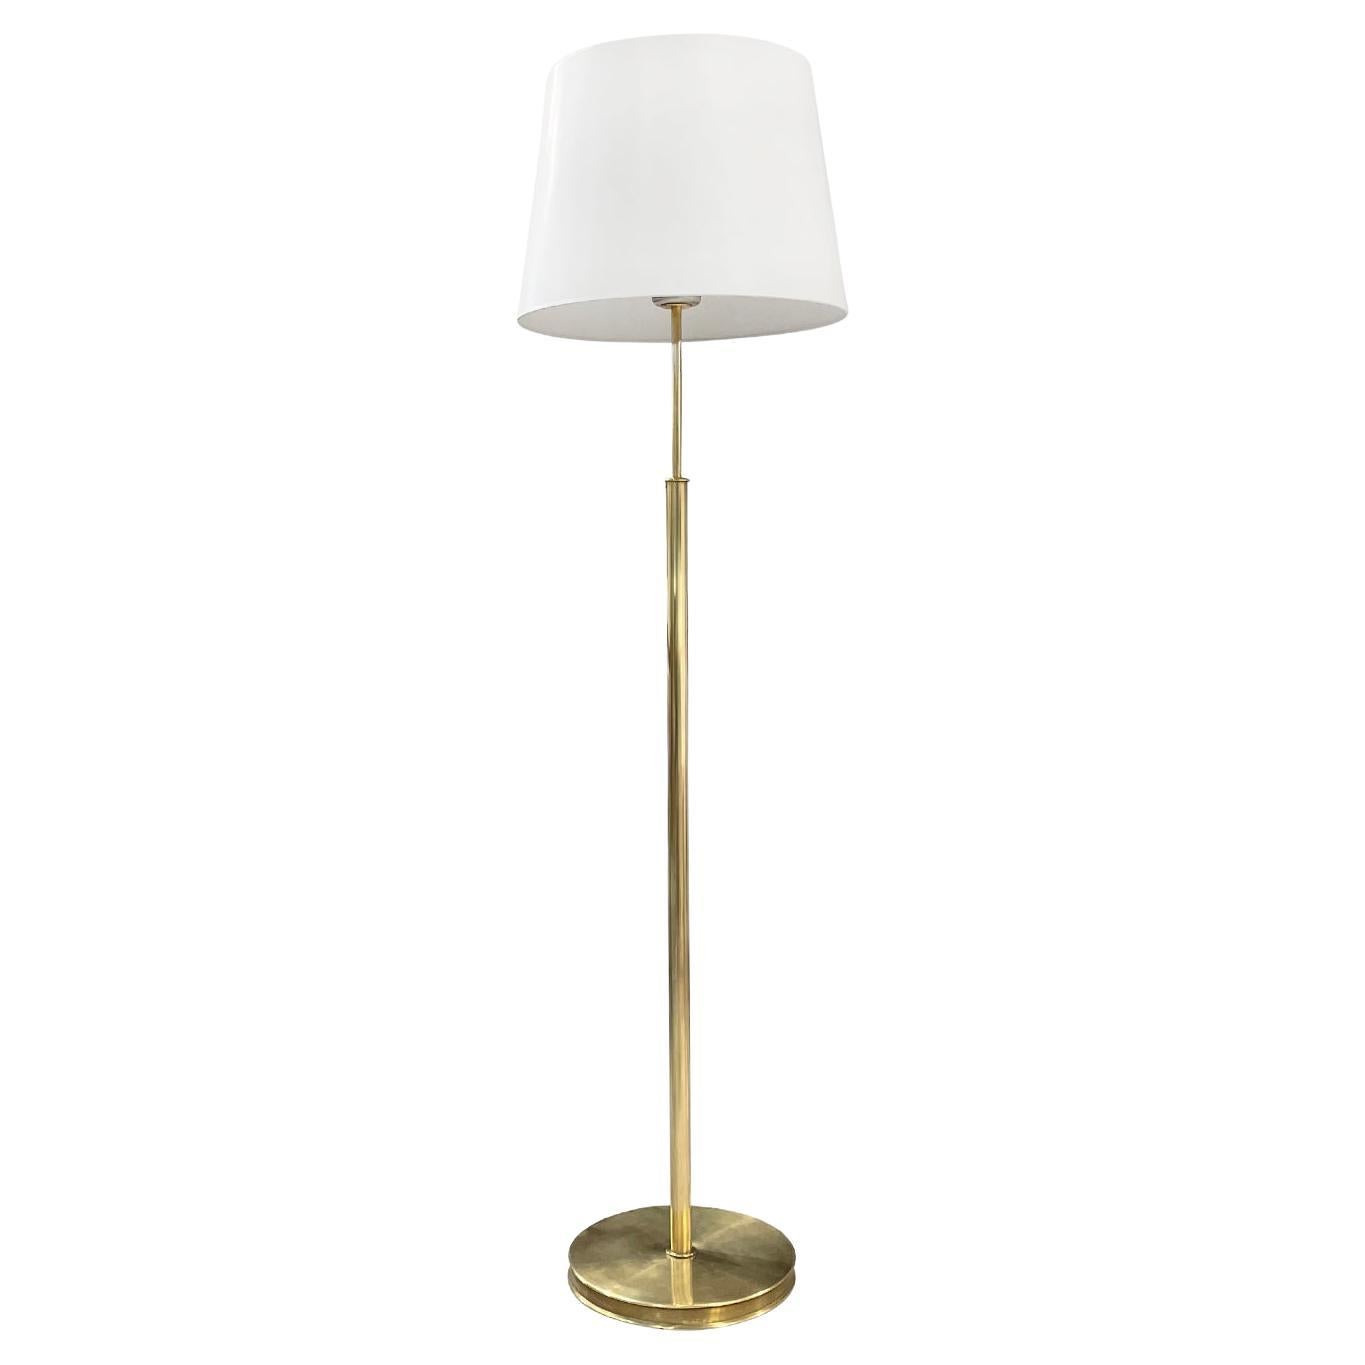 20th Century Swedish Svenskt Tenn Brass Floor Lamp, Vintage Light by Josef Frank